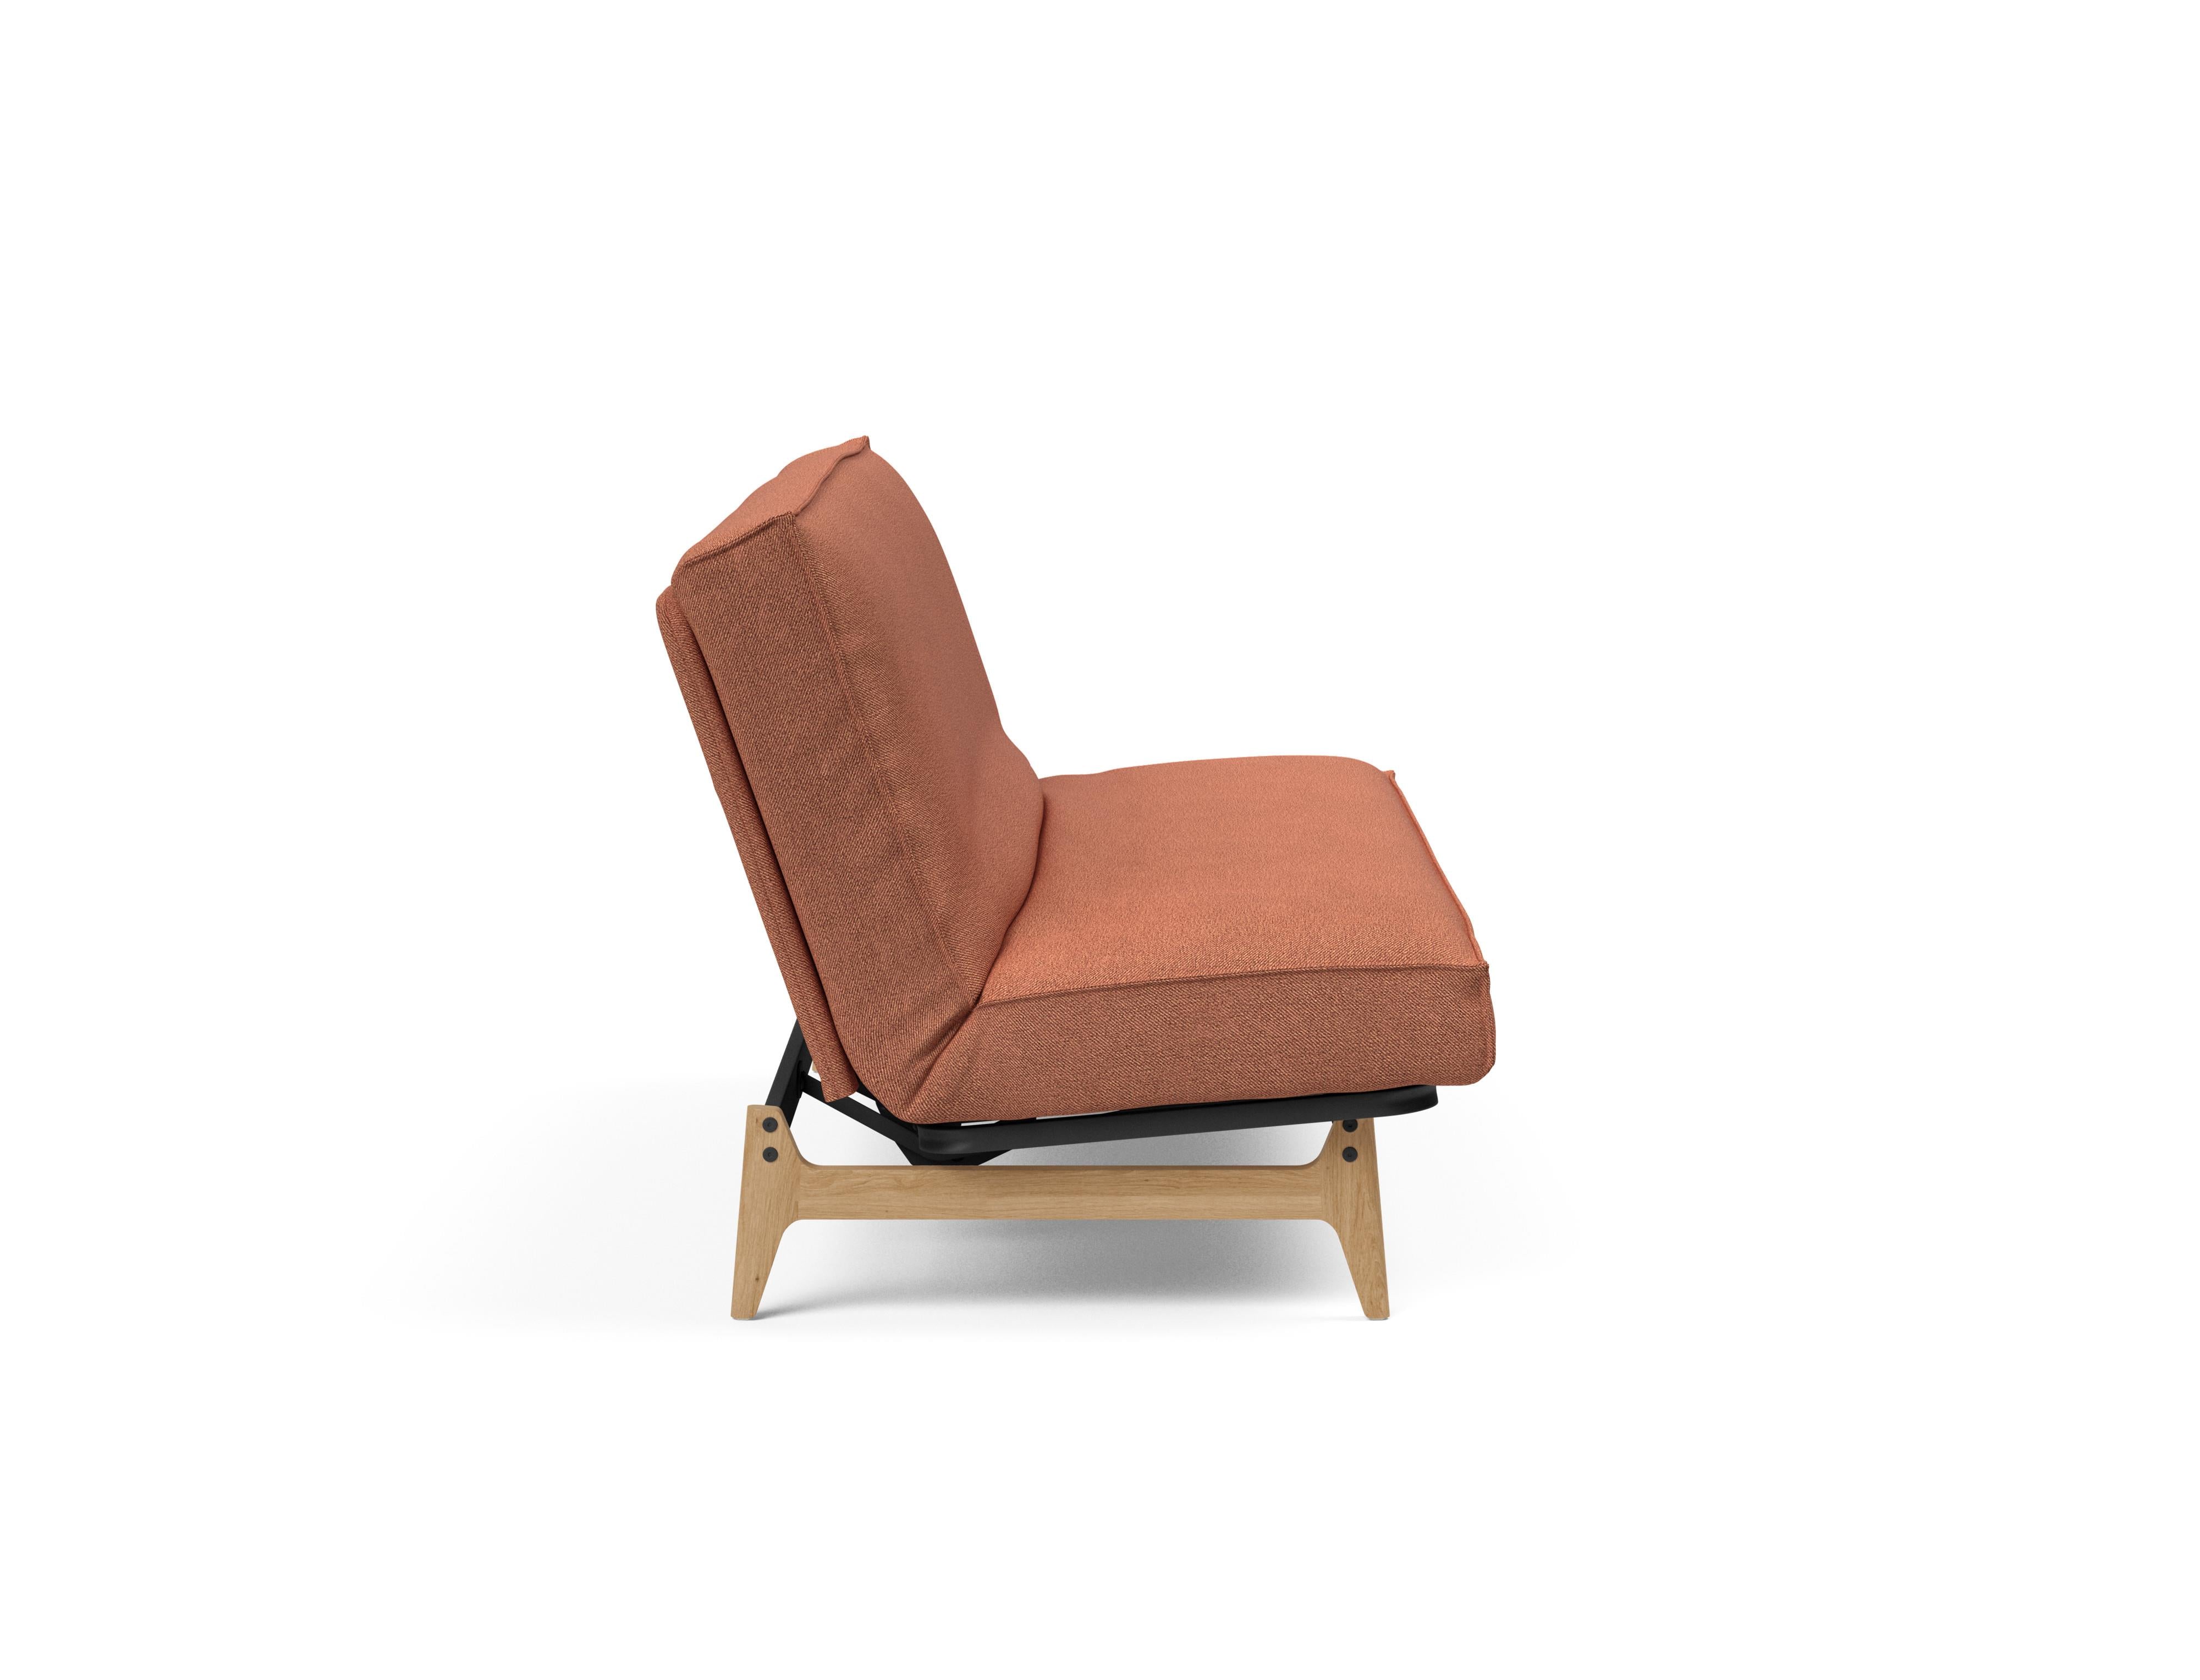 Aslak 140 Bettsofa Sharp Plus Cover in Rust 301 präsentiert im Onlineshop von KAQTU Design AG. Bettsofa ist von Innovation Living